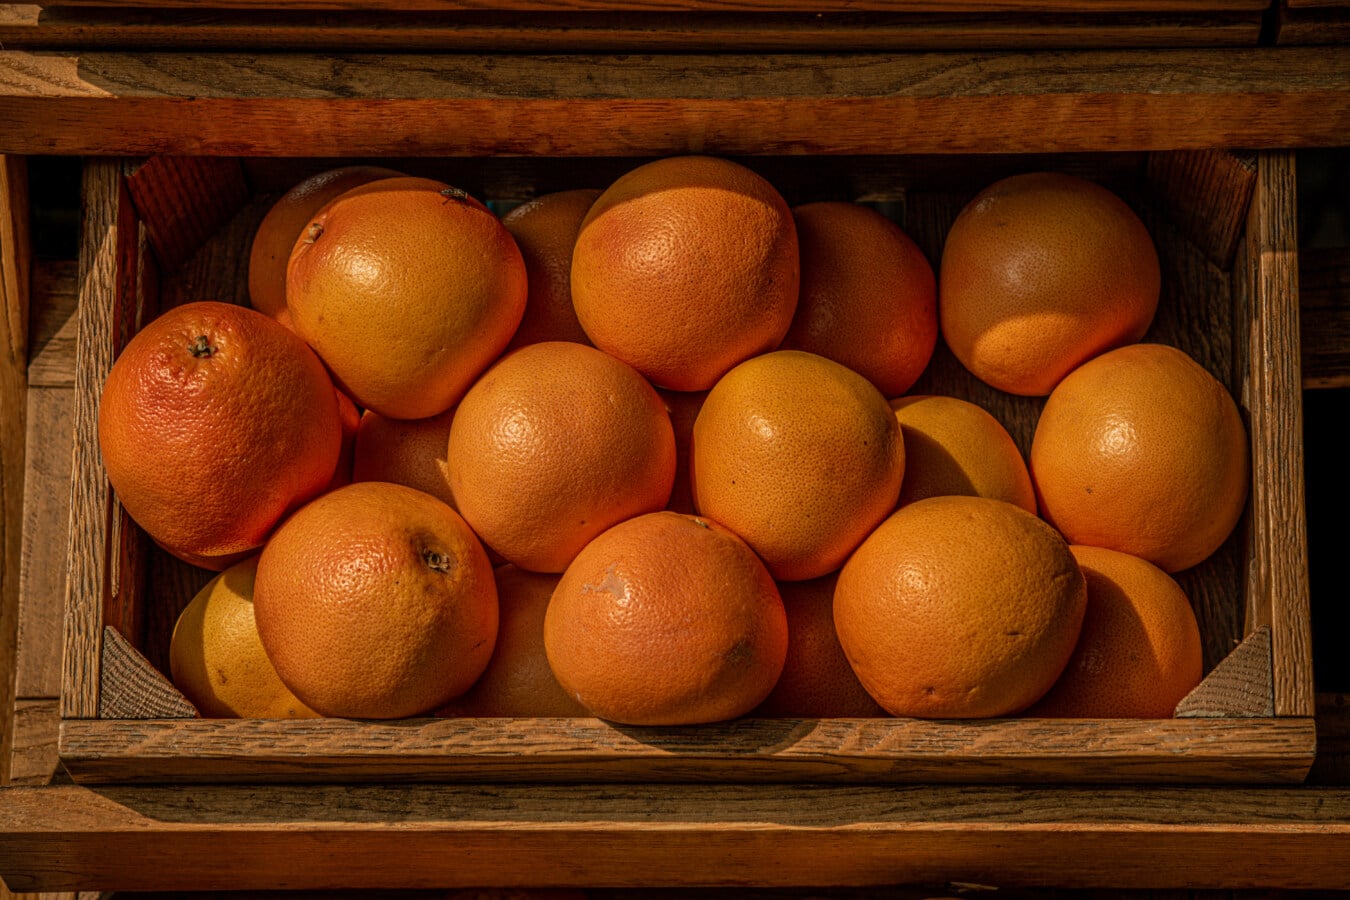 laatikko, puinen, appelsiinit, kypsä hedelmä, markkinat, hedelmät, vitamiini, terve, ruoka, ruokavalio